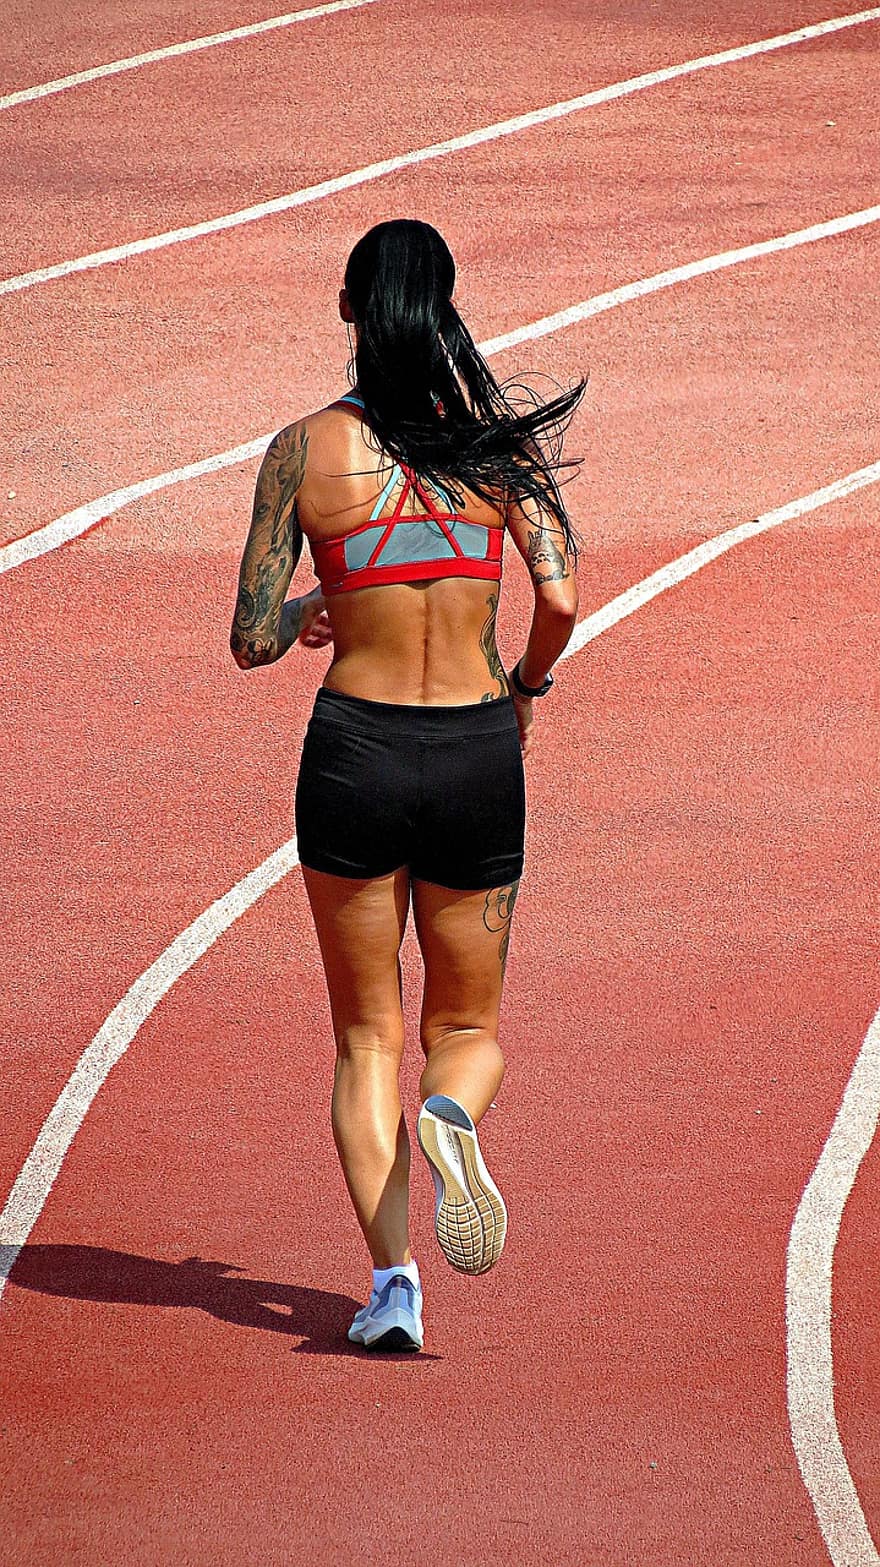 วิ่ง, การออกกำลังกาย, ลู่วิ่ง, หญิง, กีฬา, สุขภาพ, ออกไปทำงาน, วิ่งออกกำลังกาย, นักกีฬา, วิถีการดำเนินชีวิตที่มีสุขภาพดี, สร้างกล้ามเนื้อ